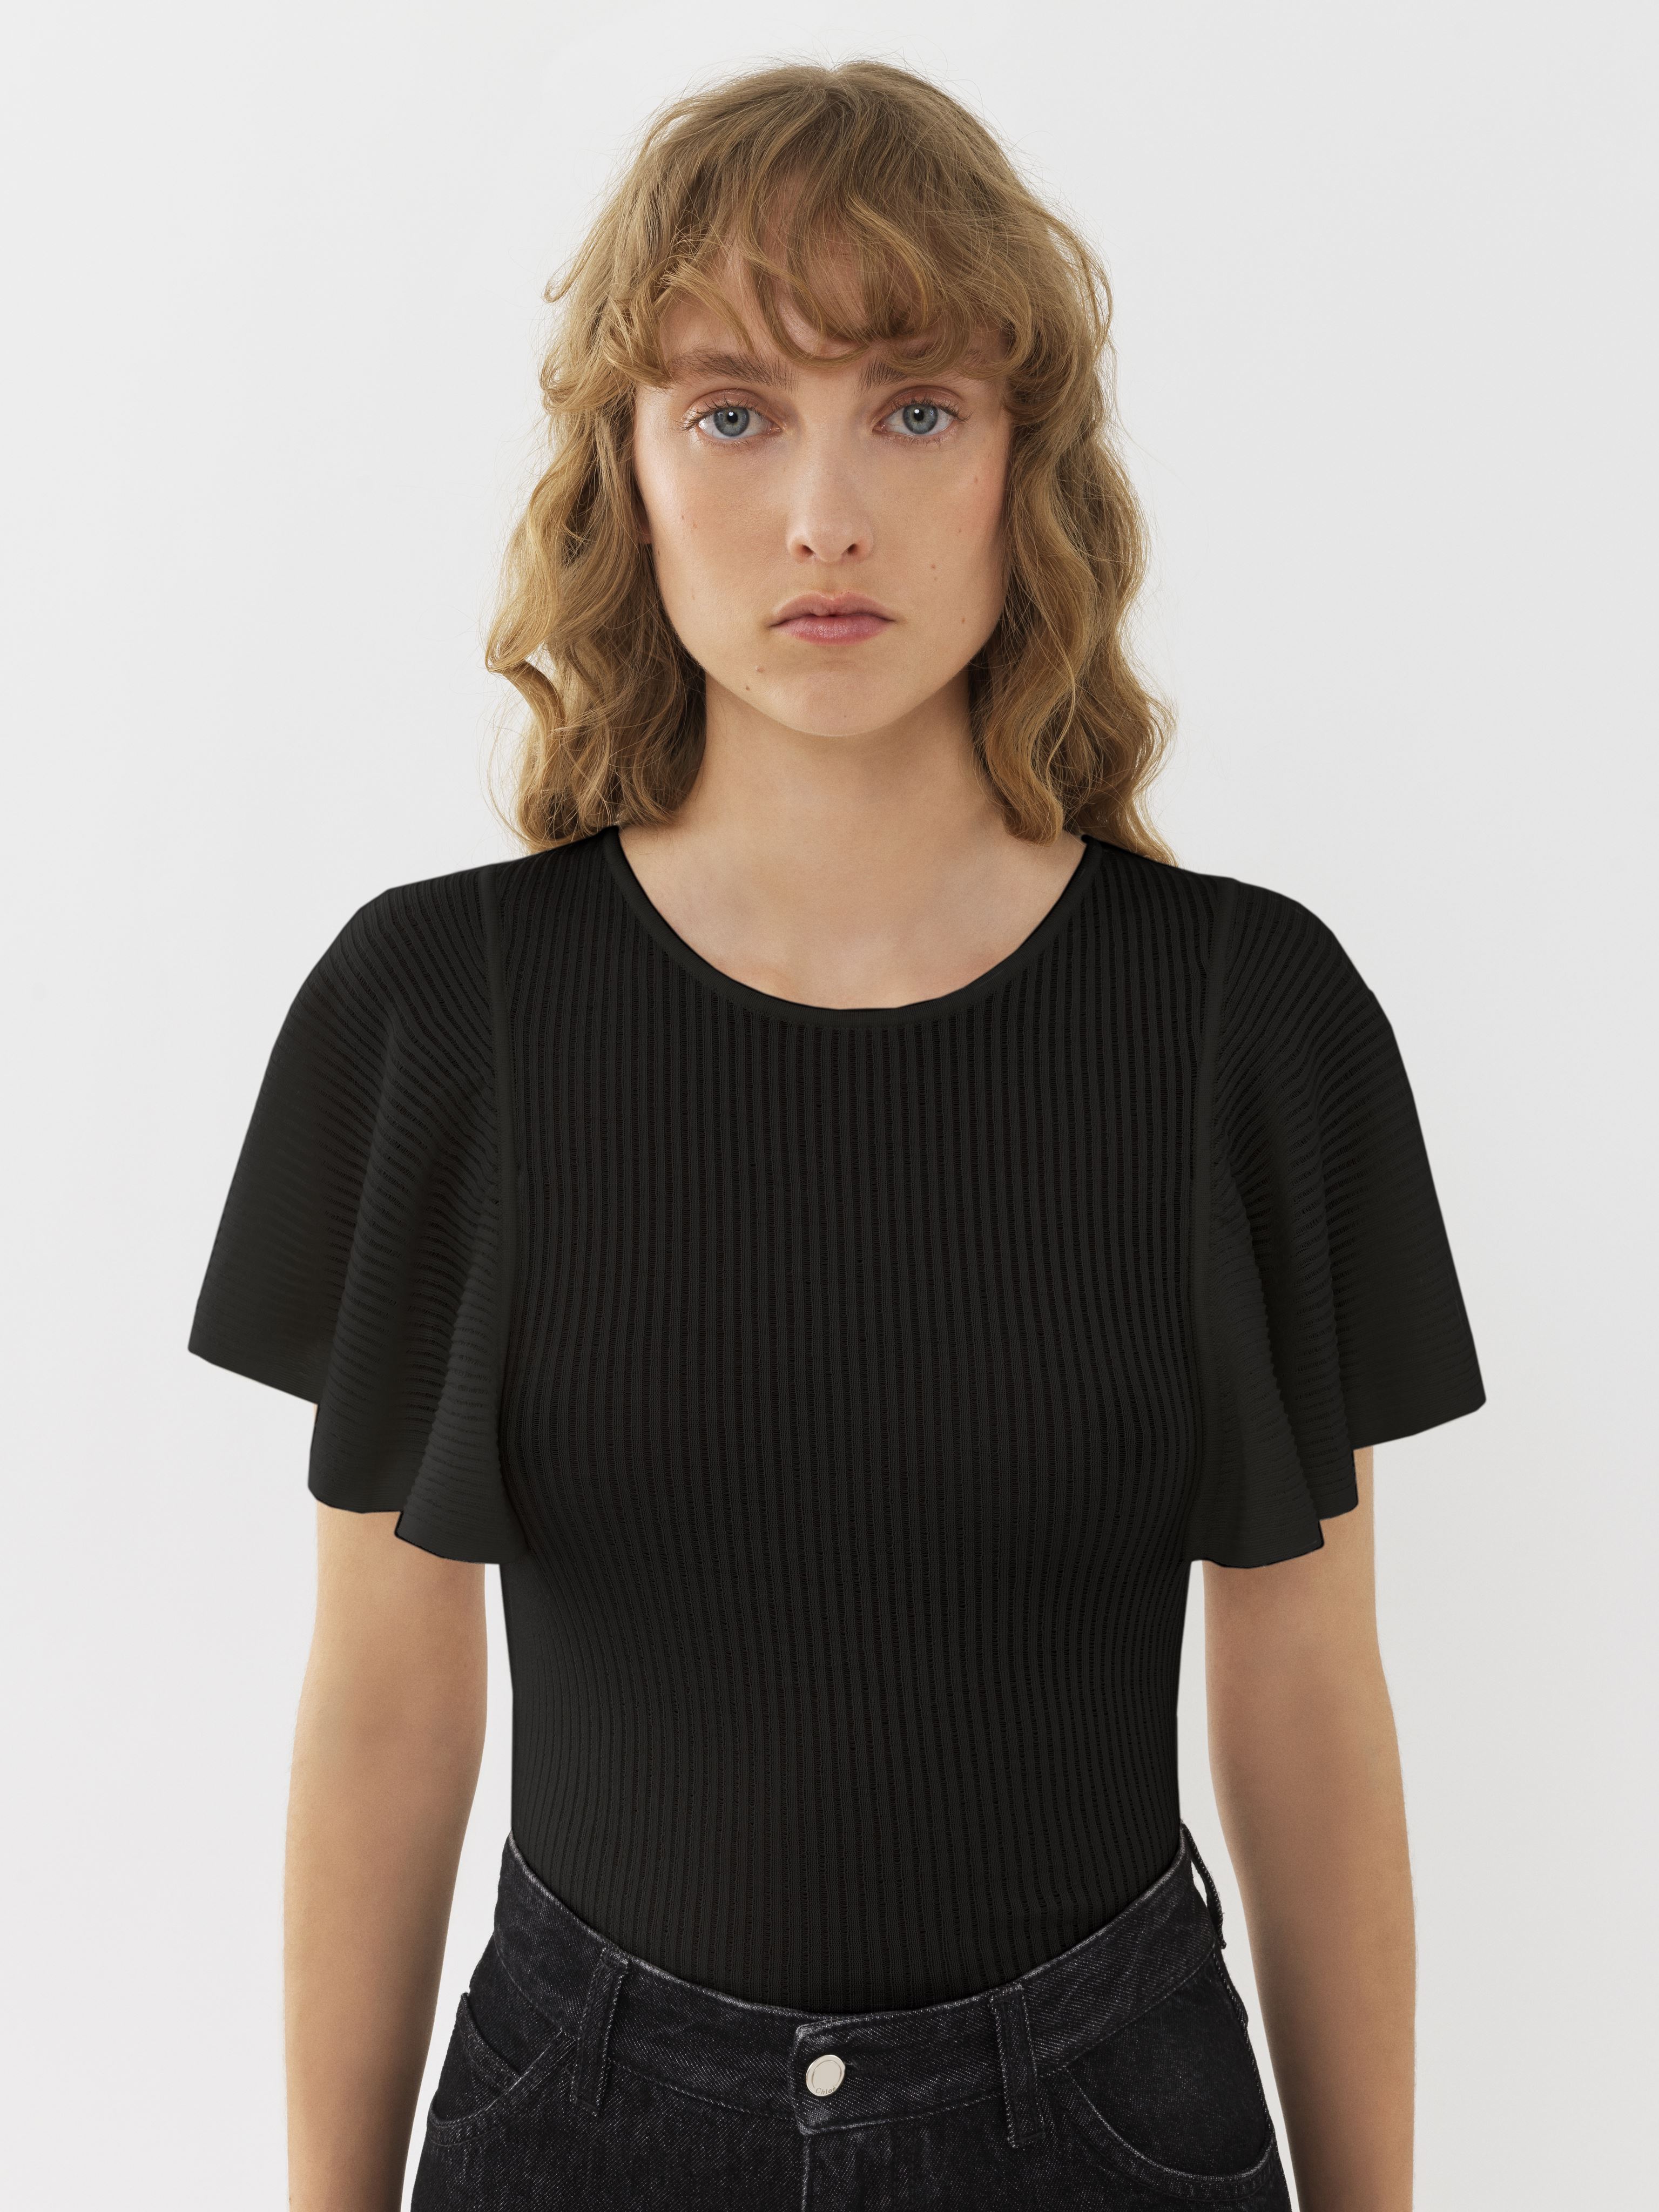 Chloé Wing-sleeve Top Black Size Xs 100% Wool In Noir